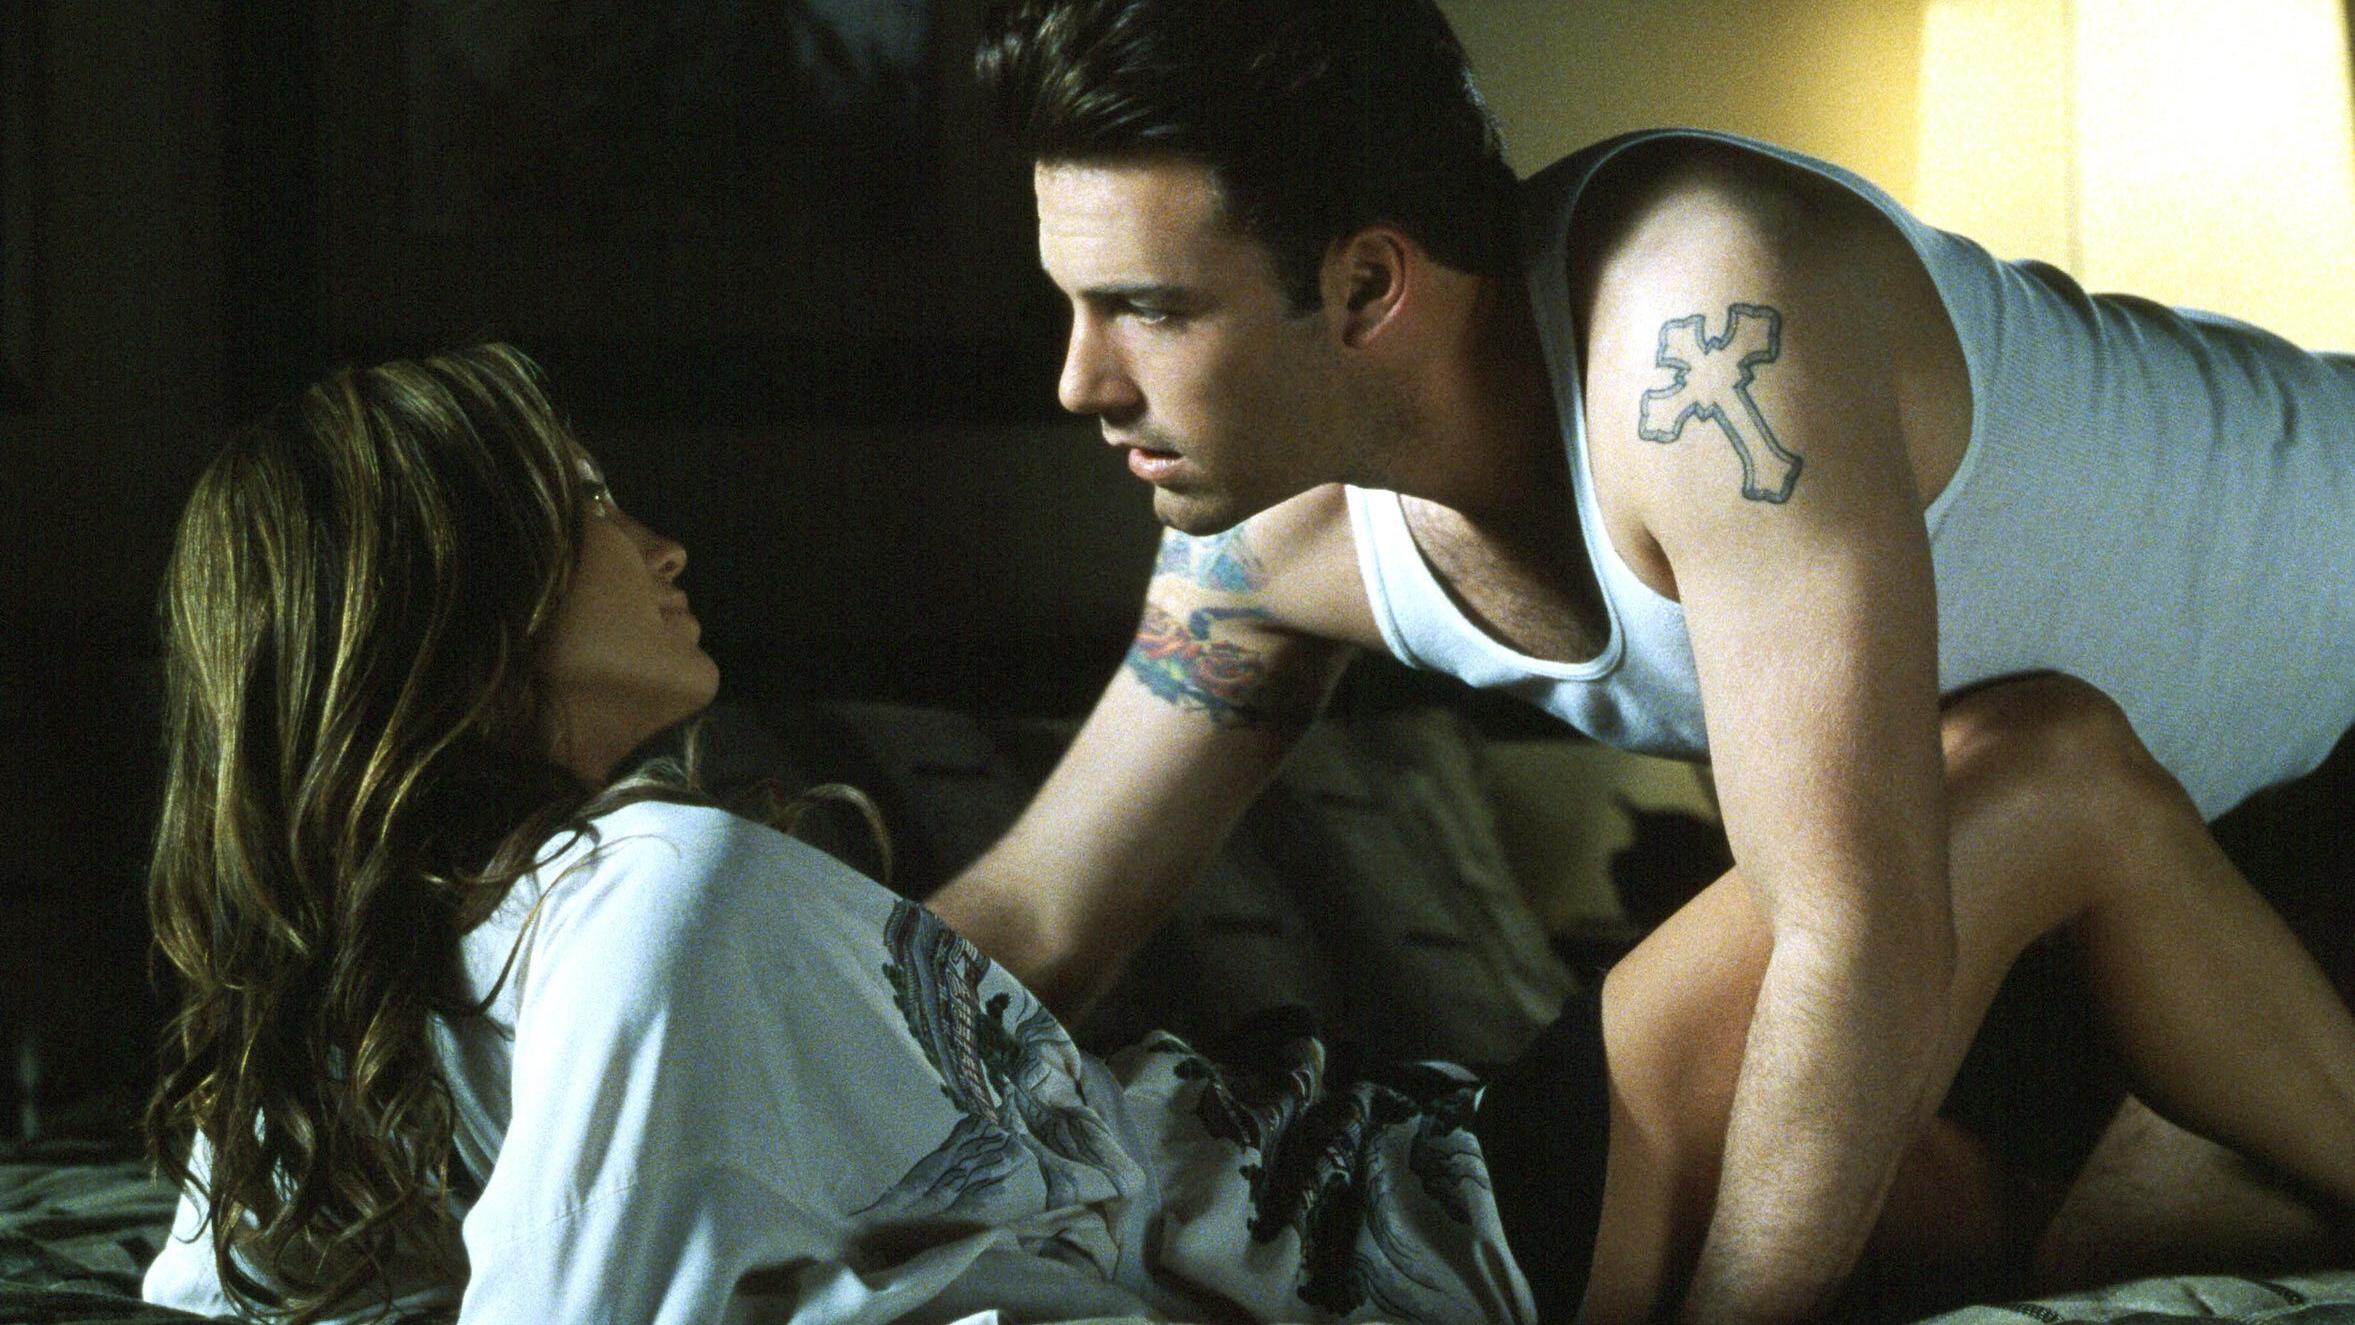 Im Film "Gigli", der von der Kritik verrissen wurde, spielten Jennifer Lopez und Ben Affleck ein Liebespaar.